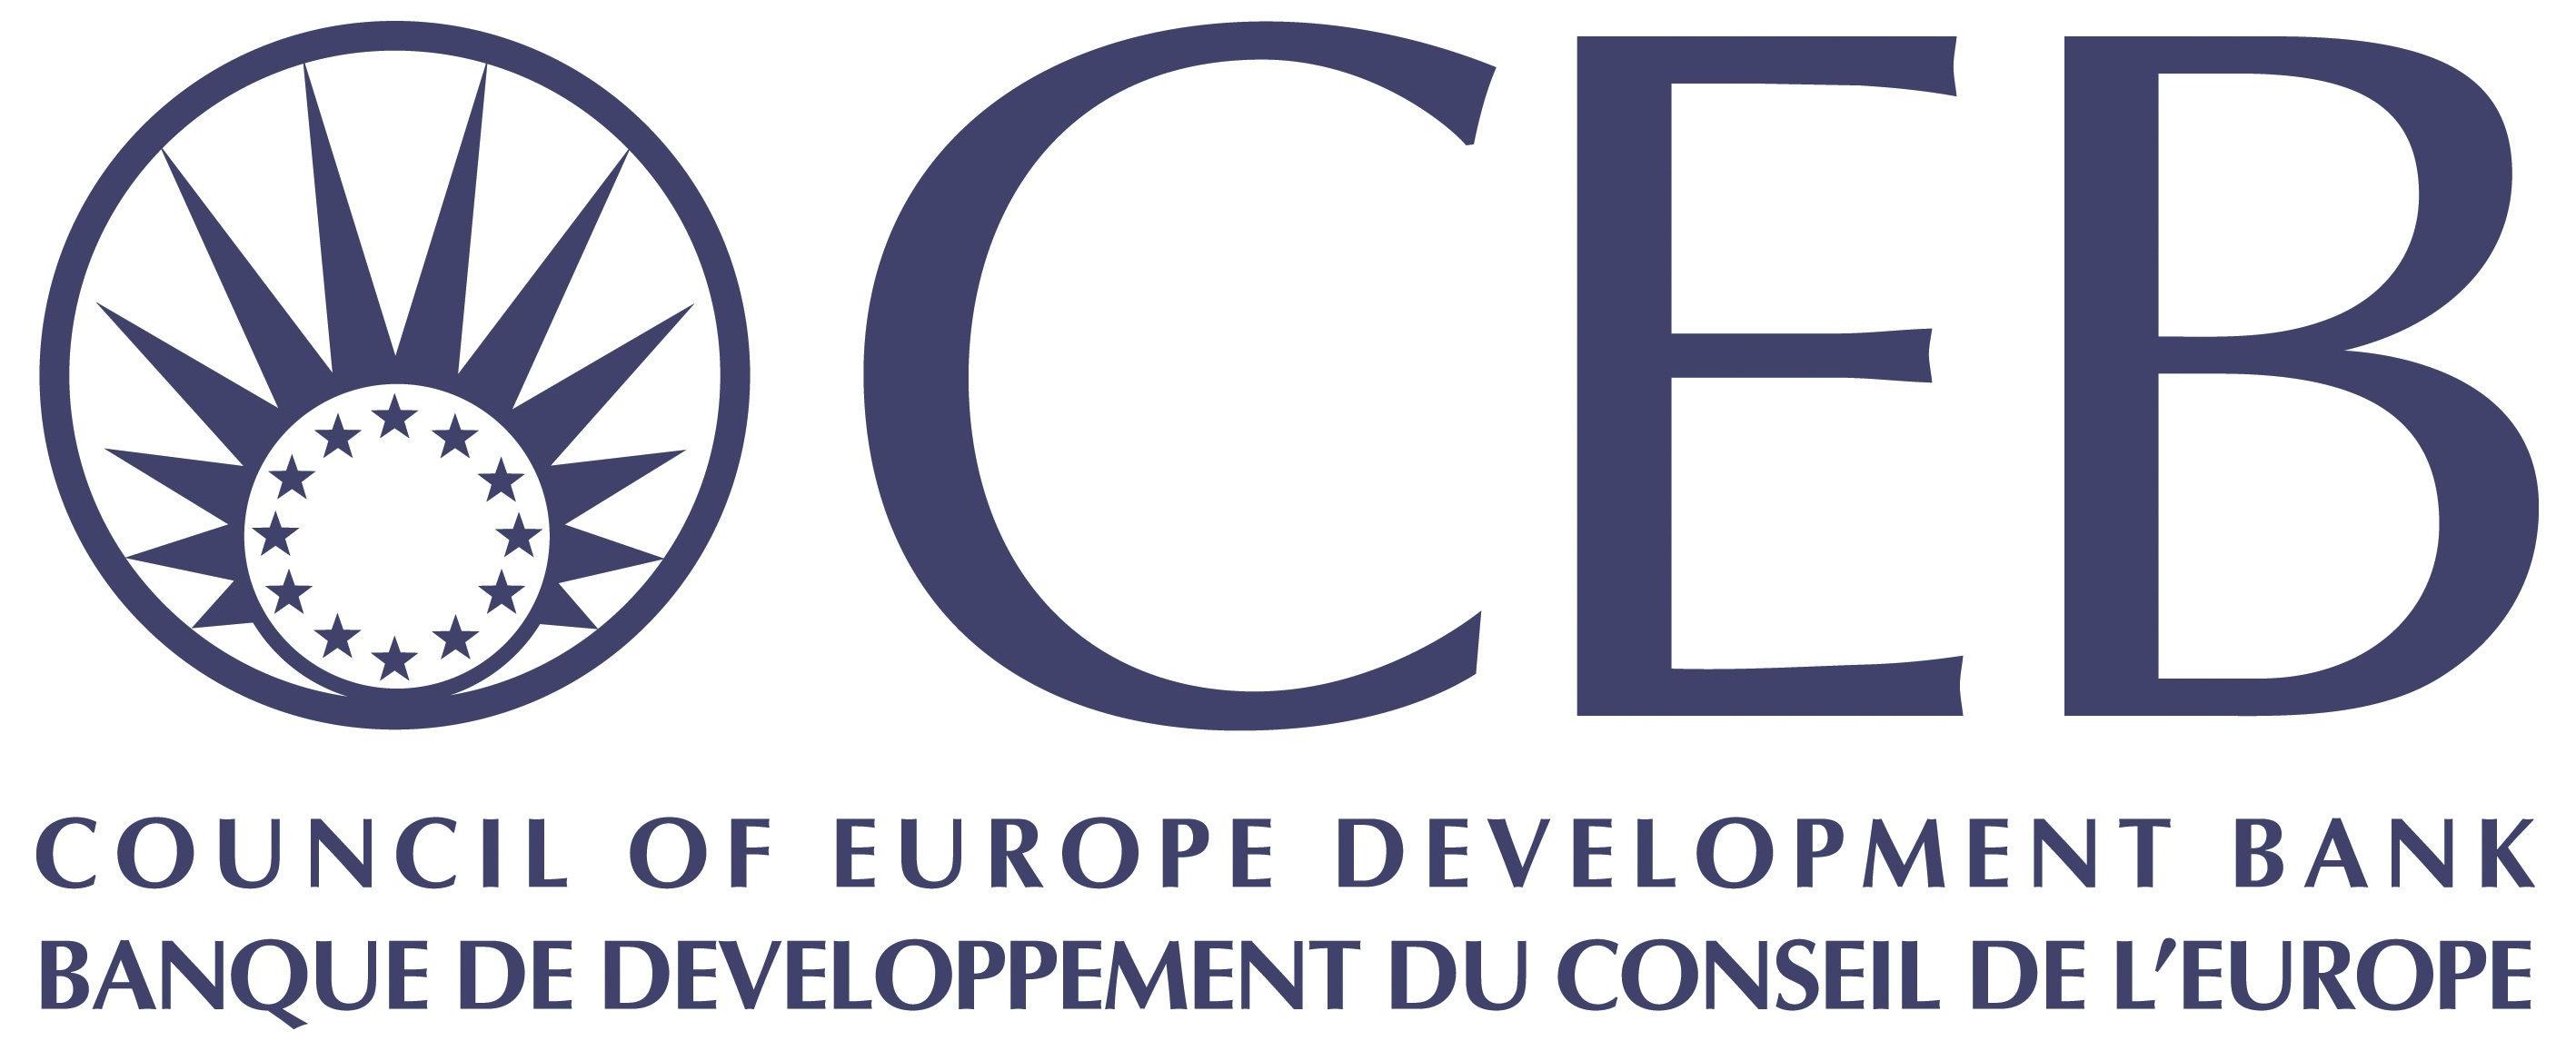 Logo CEB Haute definition 2 